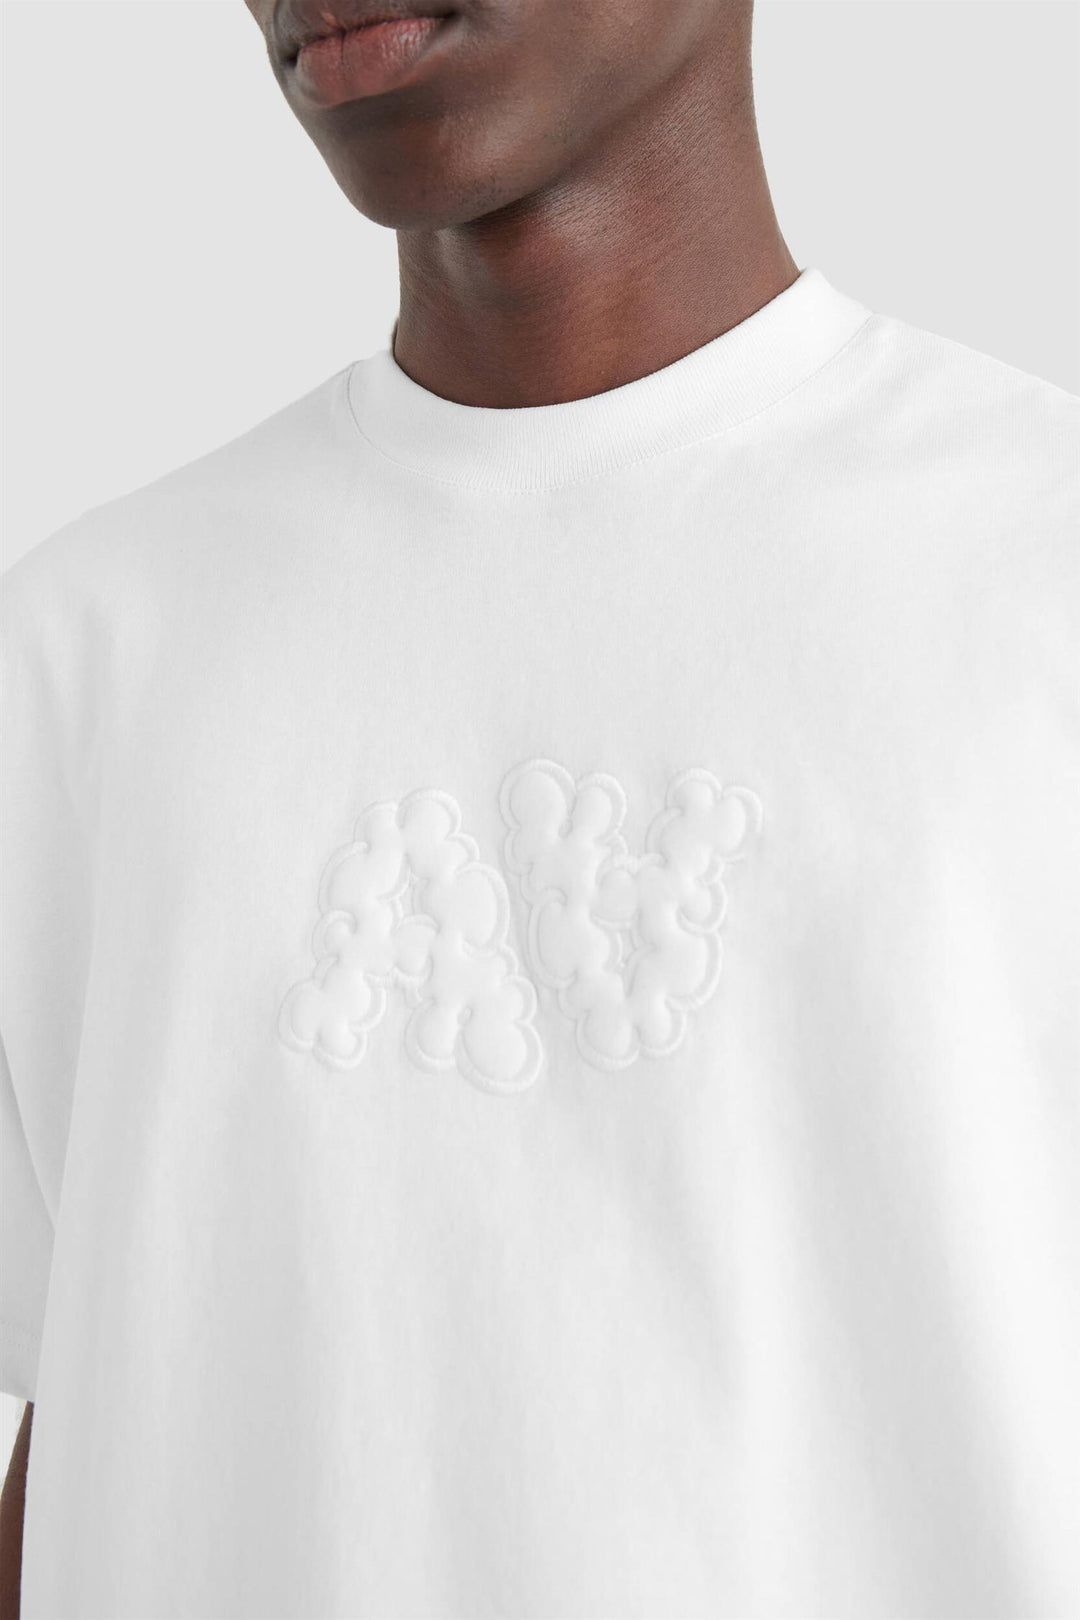 Trail Bubble A T-Shirt White